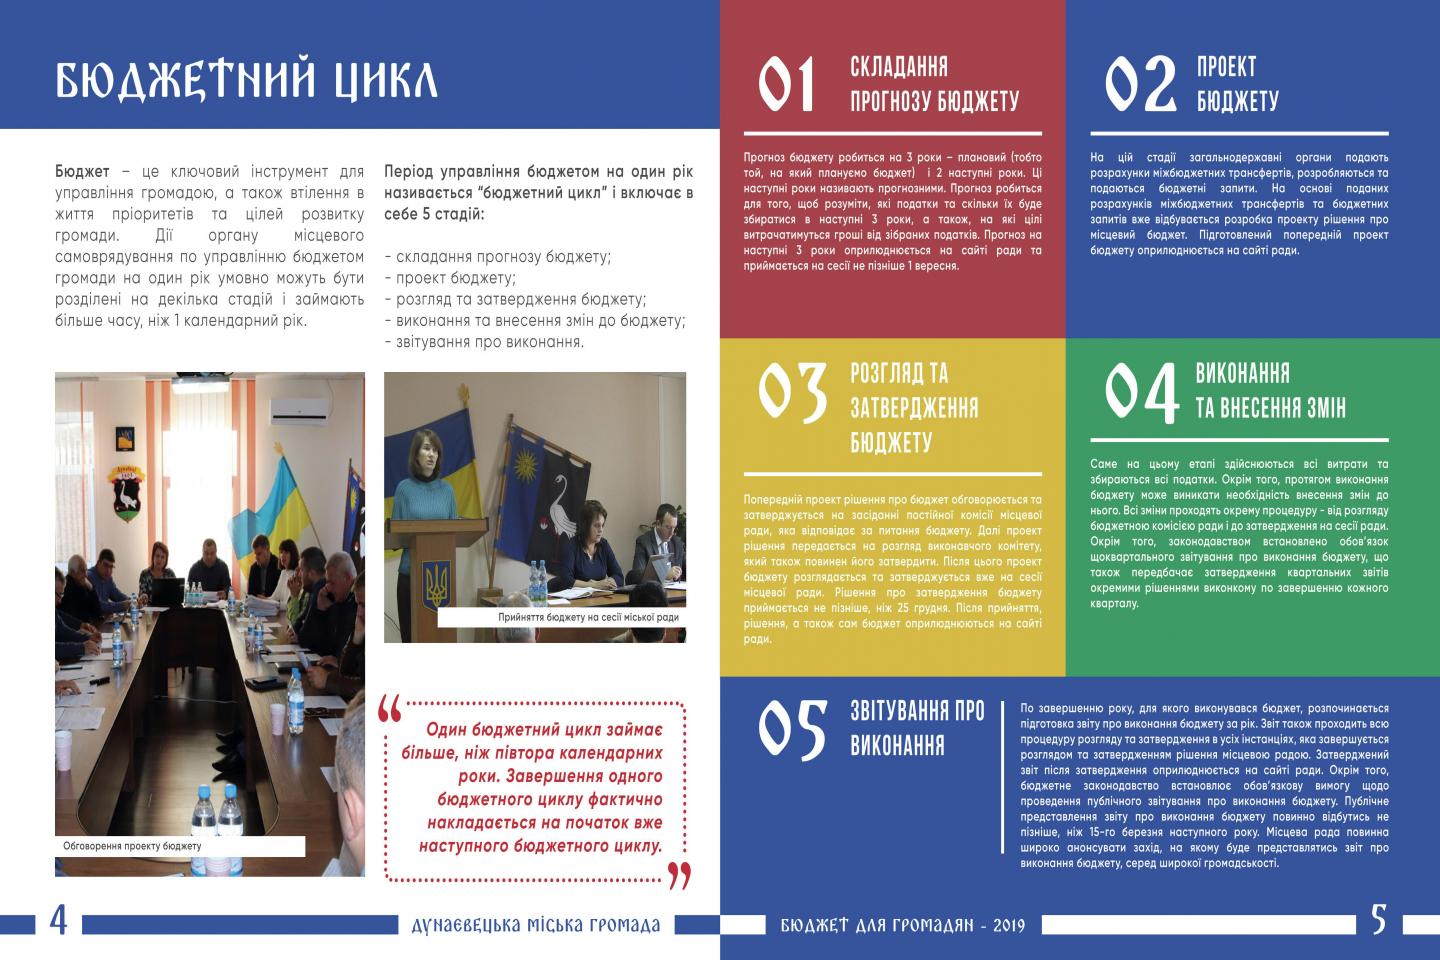 http://dunrada.gov.ua/uploadfile/archive_news/2019/11/25/2019-11-25_4454/images/images-45732.jpg